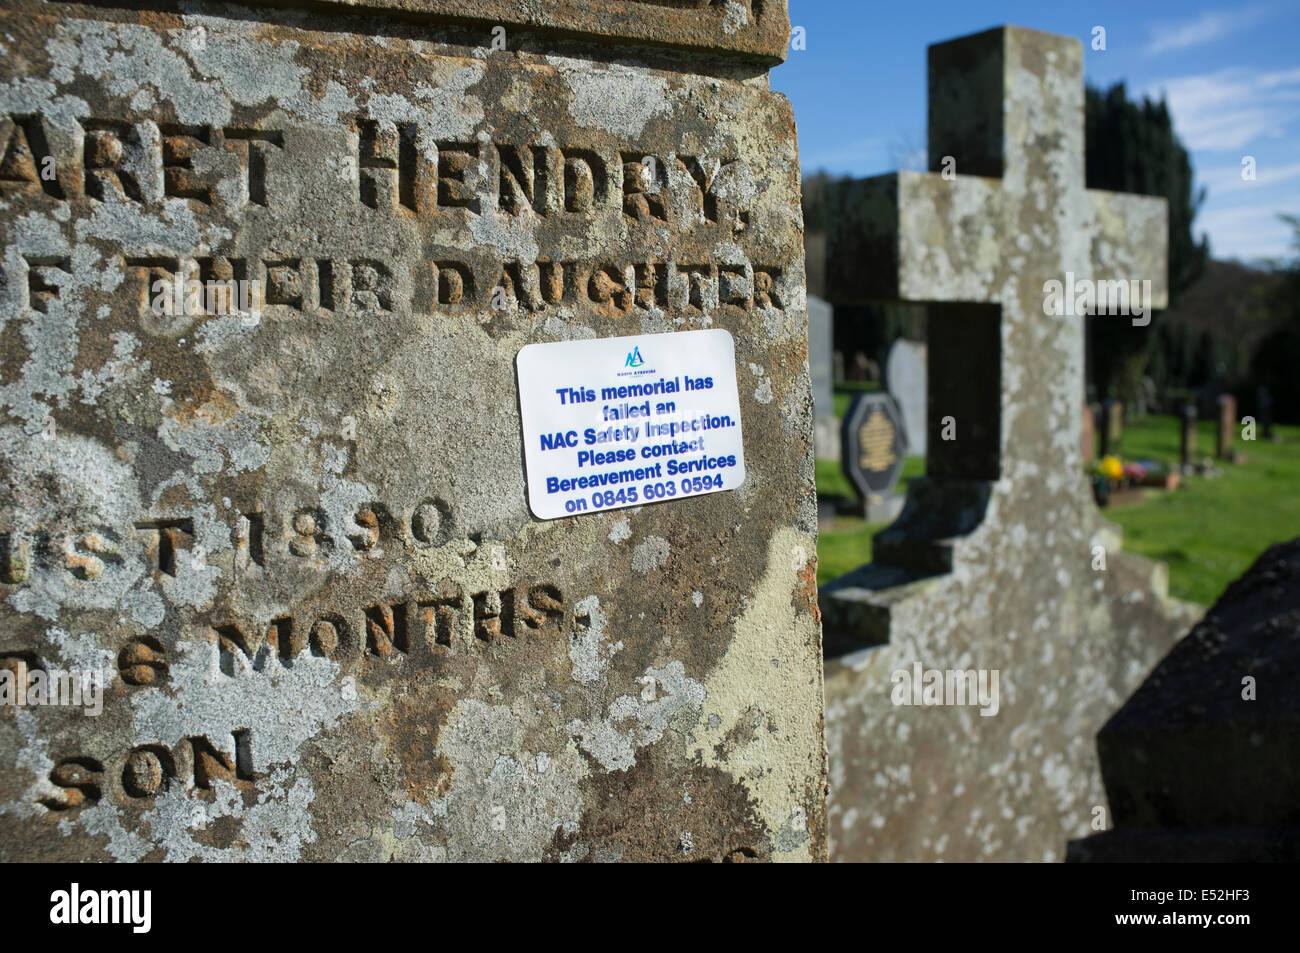 Inspección de seguridad Memorial aviso sobre las lápidas en un cementerio Foto de stock